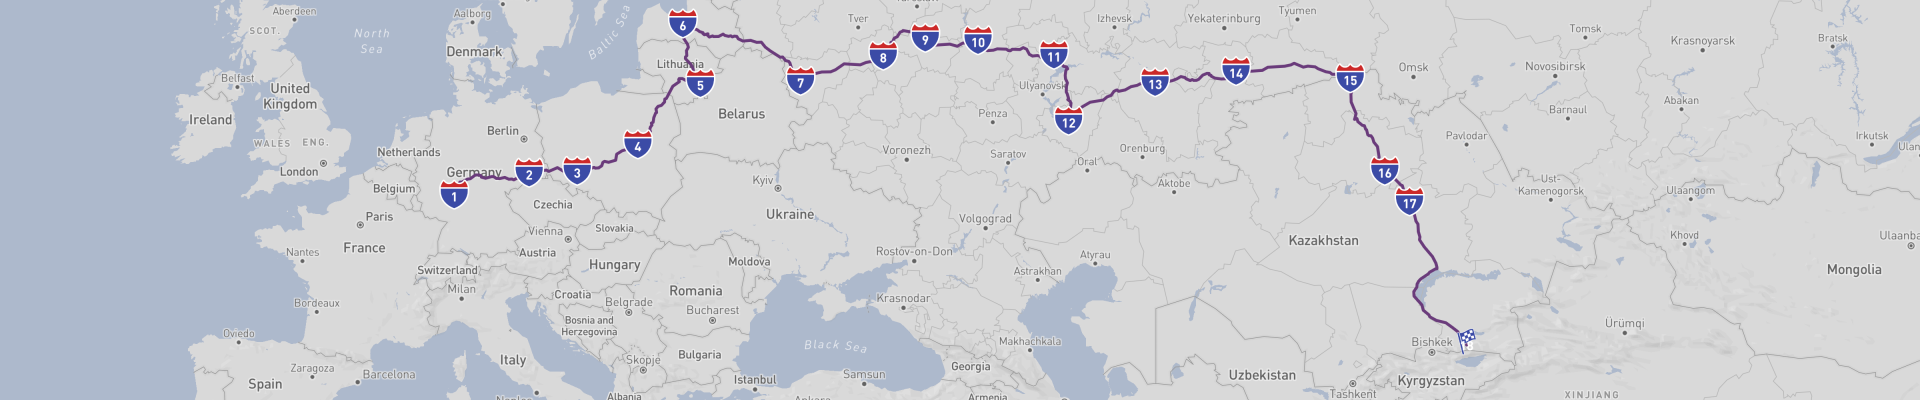 Viaje por carretera de Europa a Asia Central